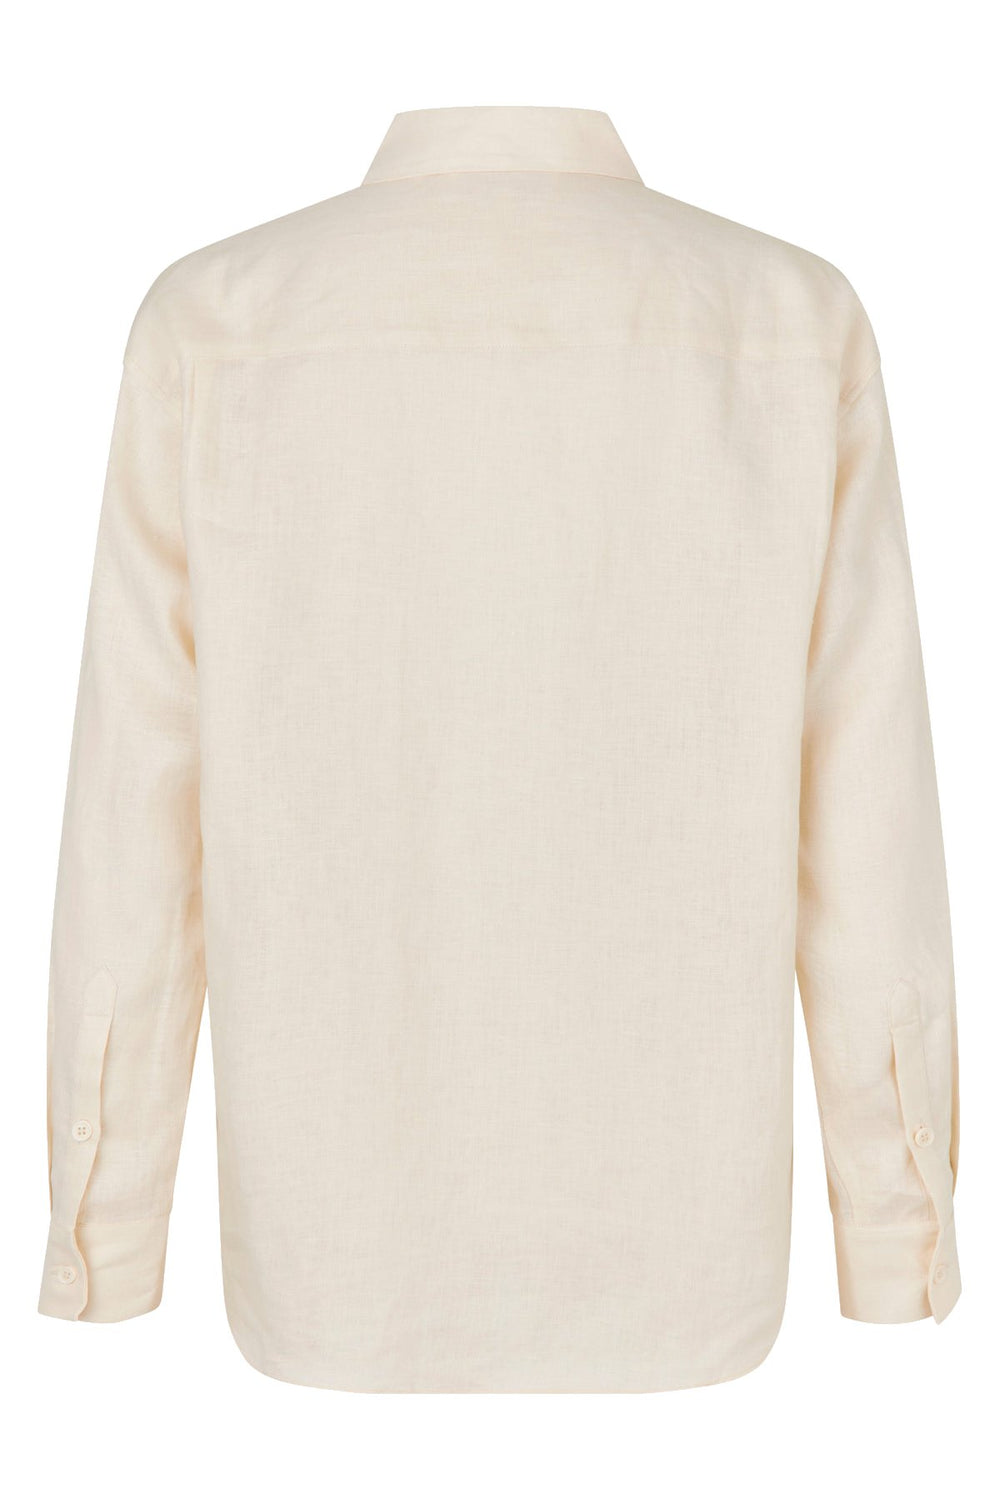 Rosemunde | Hørskjorte | Linen Shirt, ivory